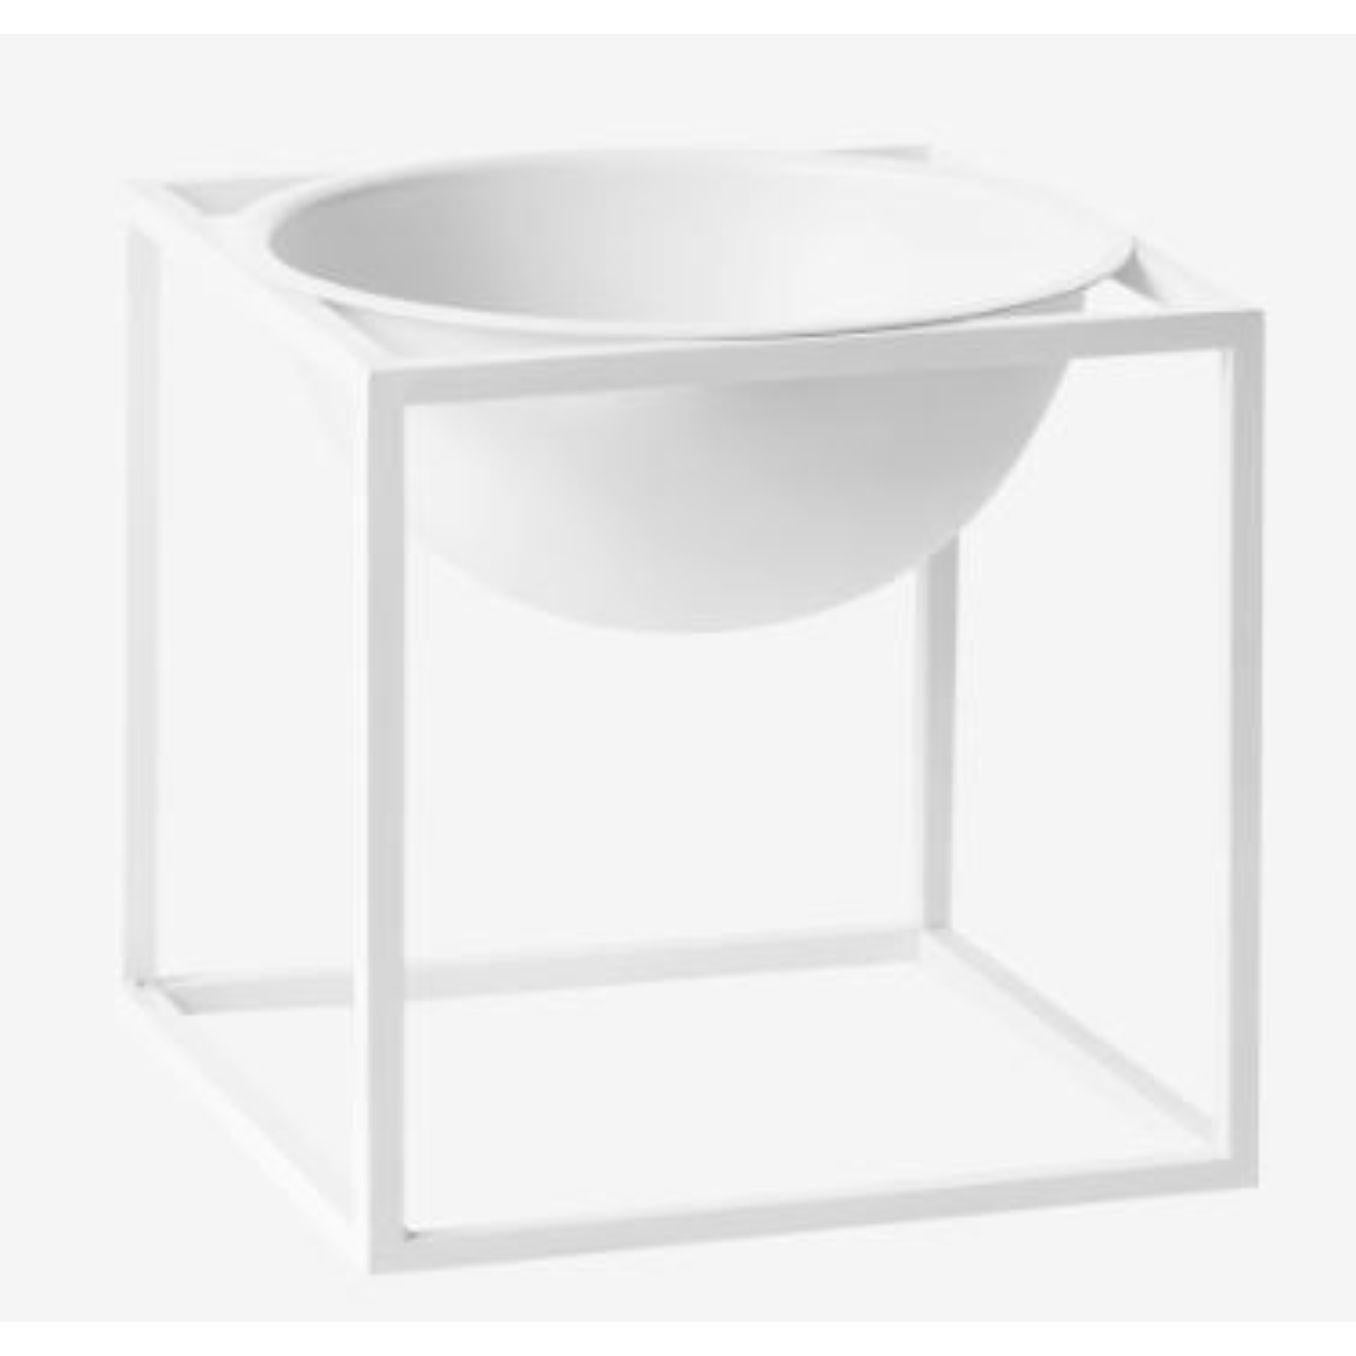 Petit bol Kubus blanc de Lassen
Dimensions : D 14 x L 14 x H 14 cm 
Matériaux : Métal 
Poids : 1.35 kg

Le Kubus Bowl est basé sur des croquis originaux de Mogens Lassen, et contient des éléments du Bauhaus, dont Mogens Lassen s'est inspiré. Le